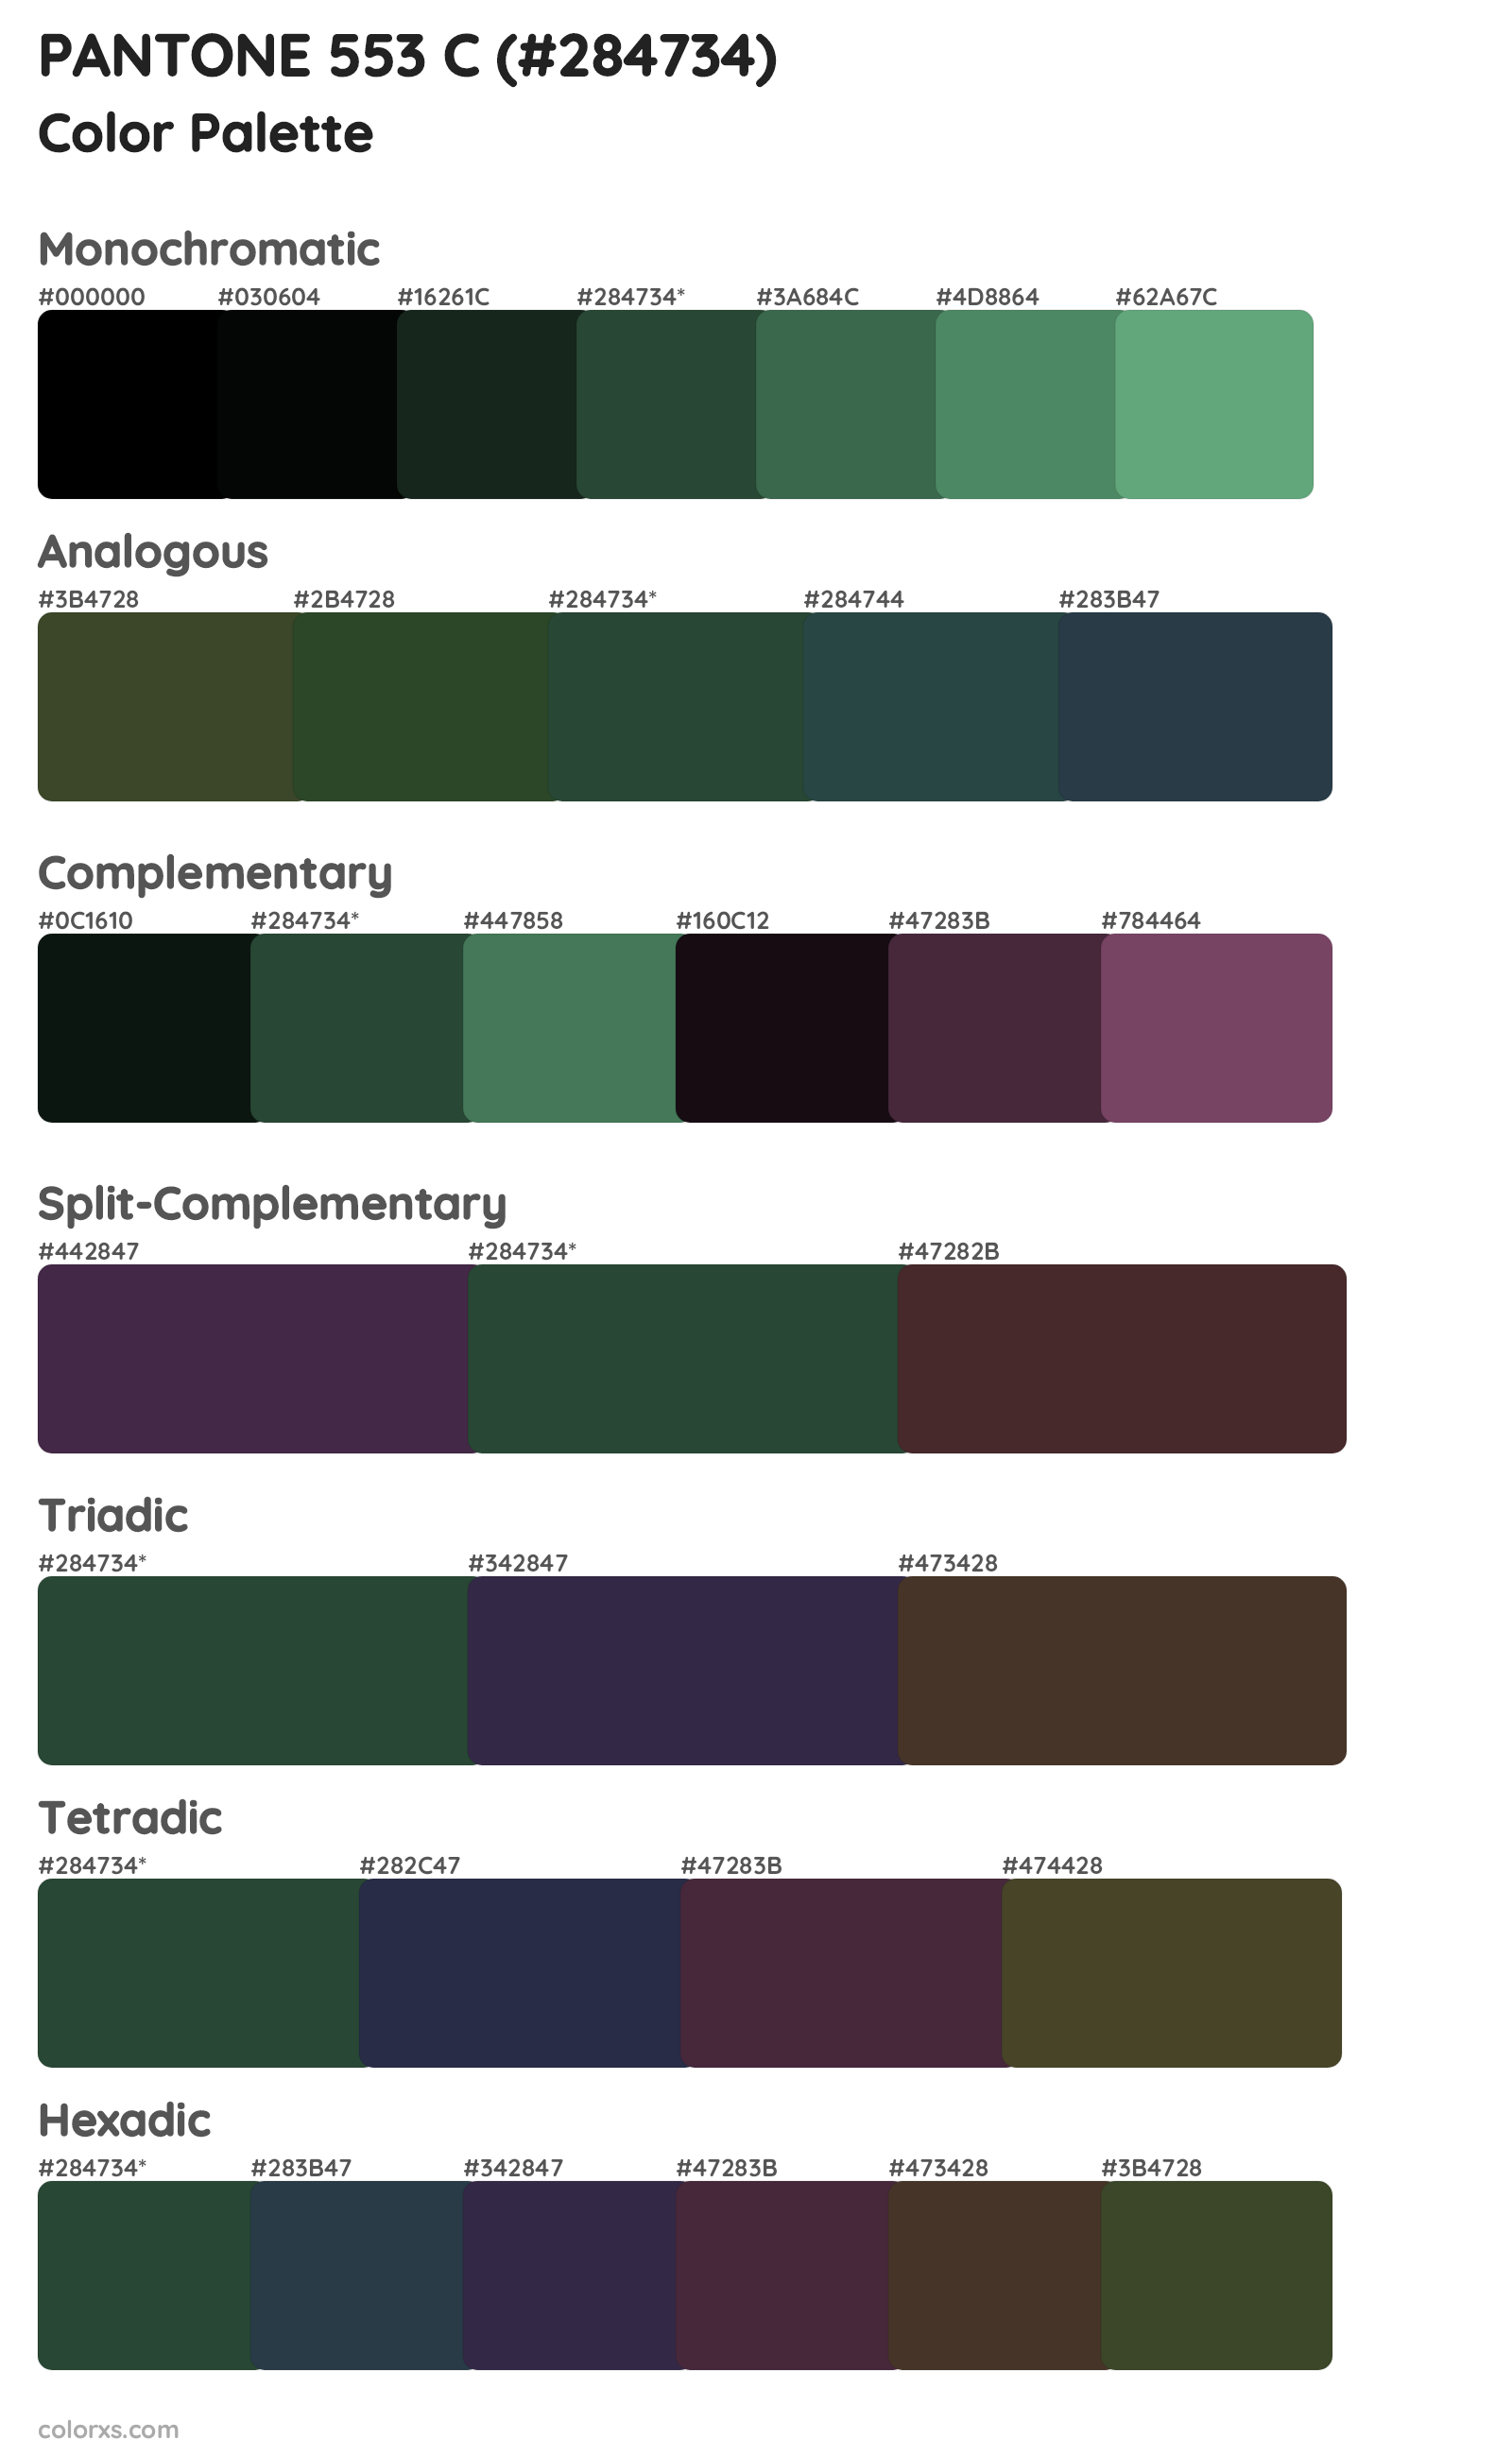 PANTONE 553 C Color Scheme Palettes